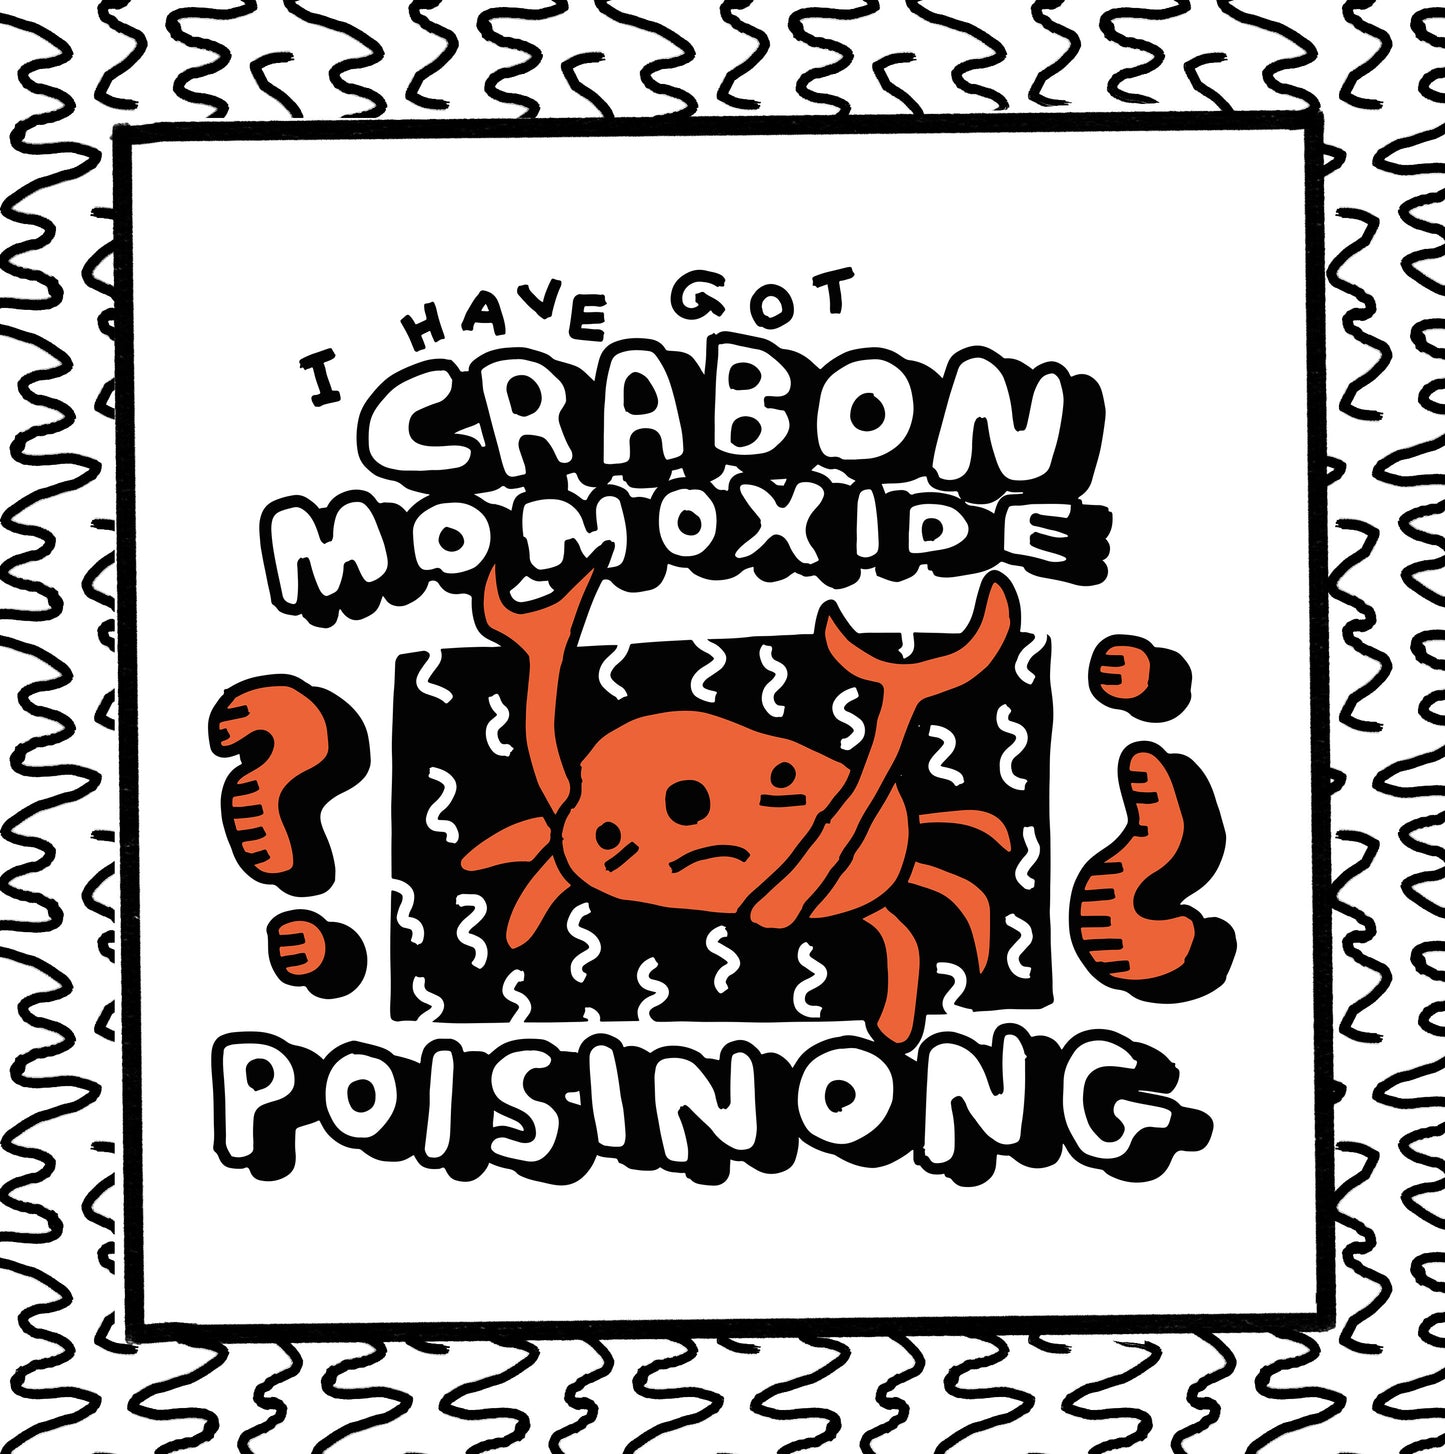 crabon monoxide poisinong